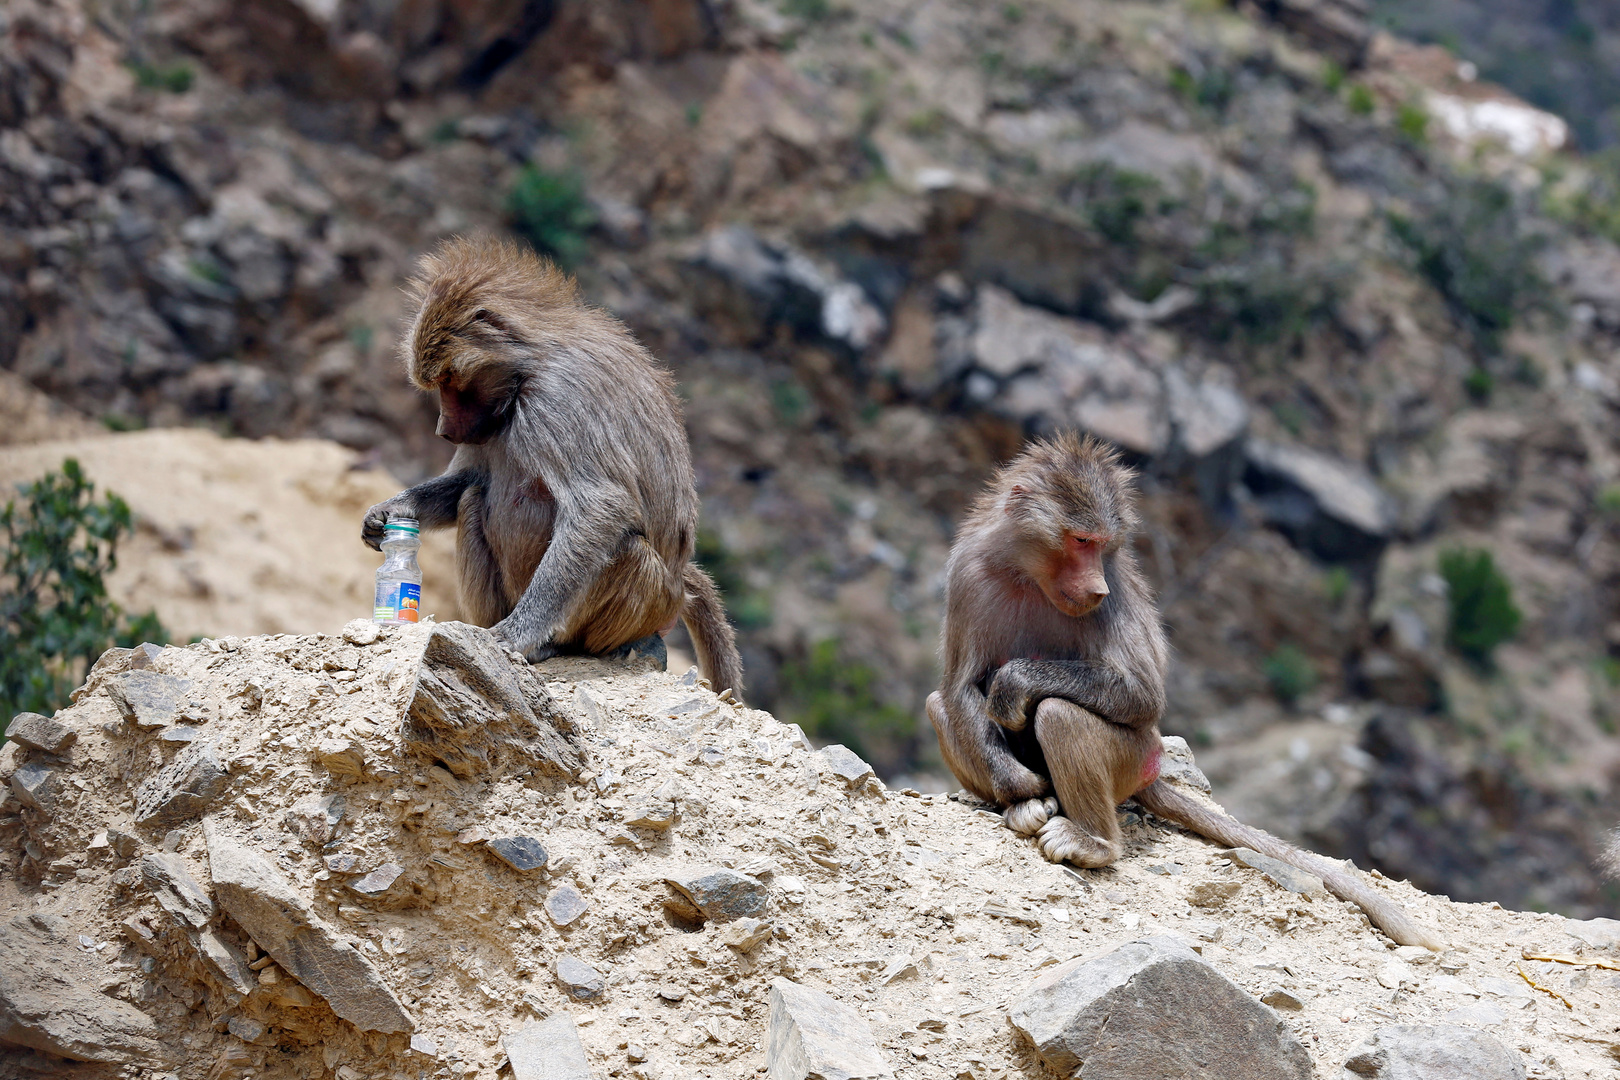 قطعان من القردة تثير قلق سكان منطقة في السعودية (فيديو)